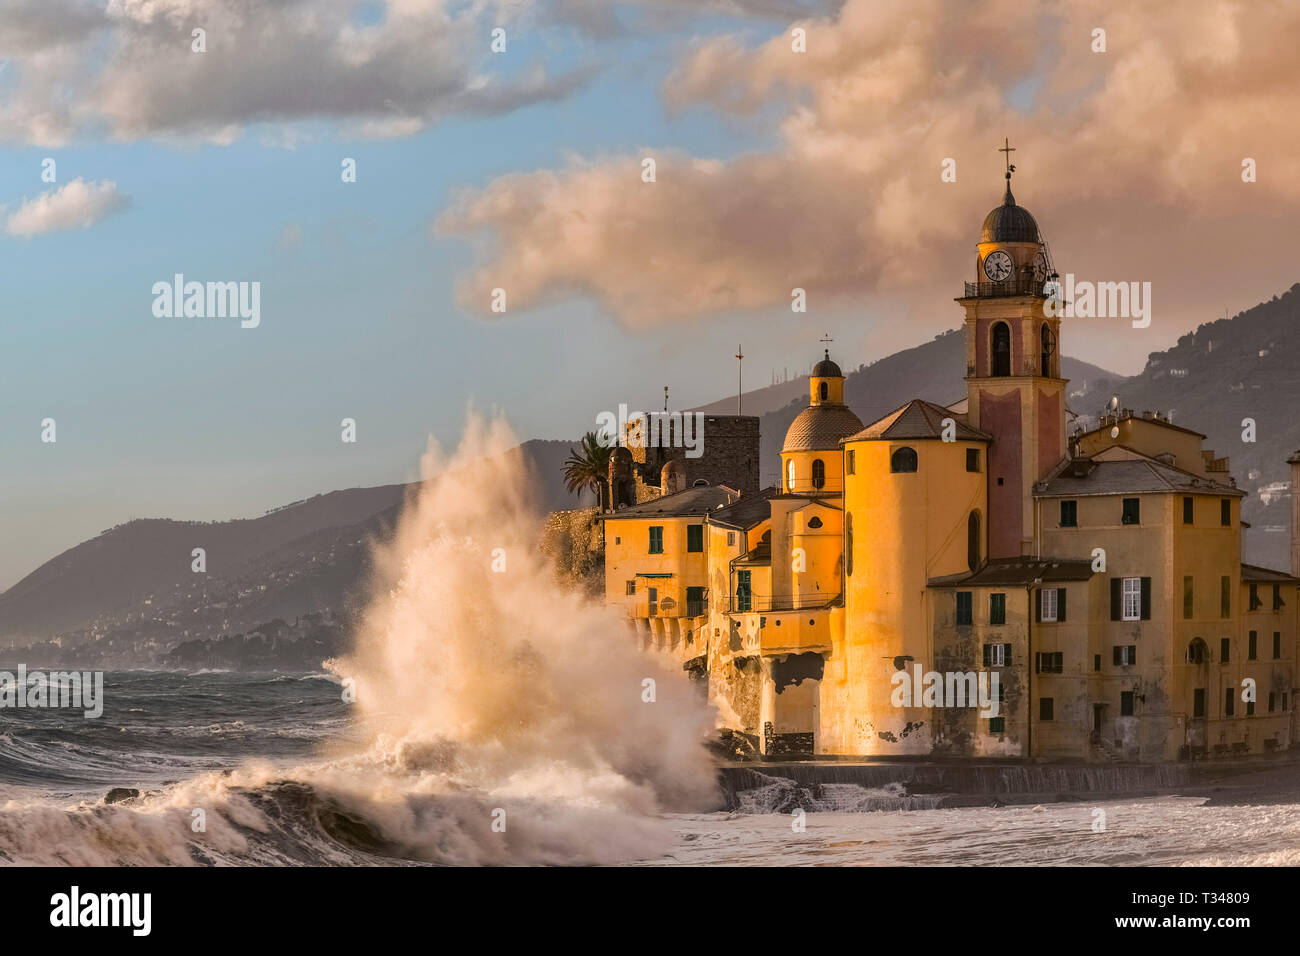 Italie Ligurie Gênes est situé dans la partie orientale de la Ligurie, dans la province de Gênes, et est l'une des plus belles villes de la Ligurie, avec un très suggestif église qui donne sur la mer et avec beaucoup d'ondes de tempête, les vagues s'écraser sur ses murs. Banque D'Images